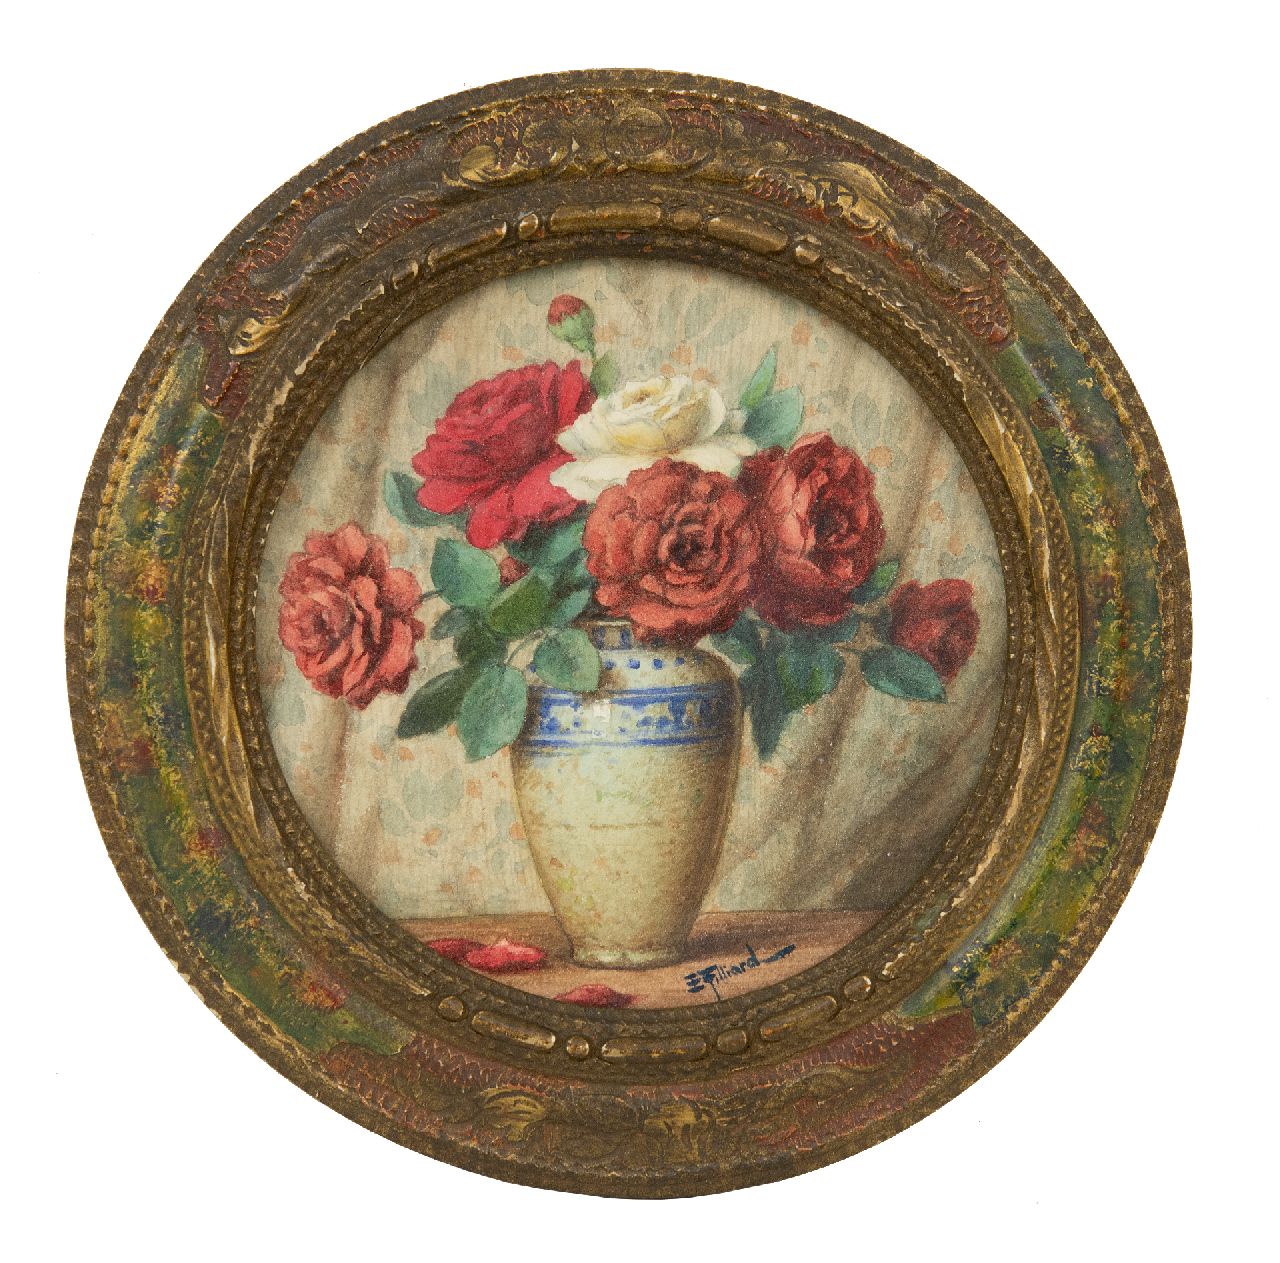 Filliard E.  | Ernest Filliard, Stilleven met rozen, aquarel op papier 14,2 x 14,2 cm, gesigneerd rechtsonder